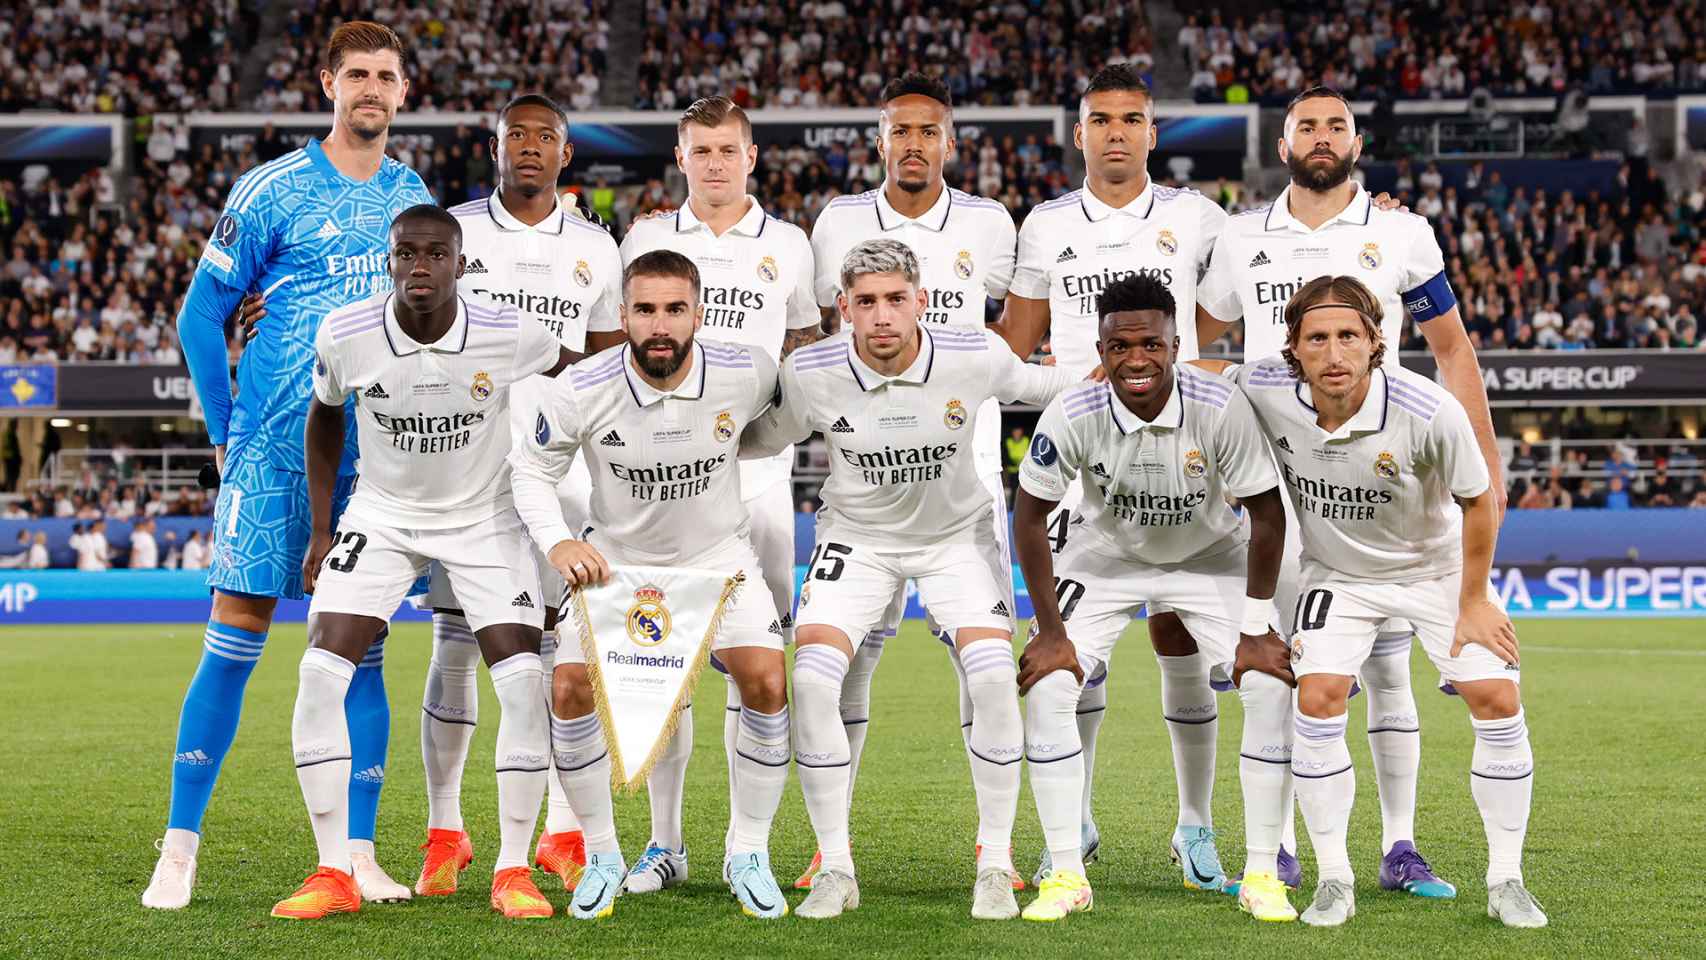 Alineación del Real Madrid en la Supercopa de Europa / Real Madrid